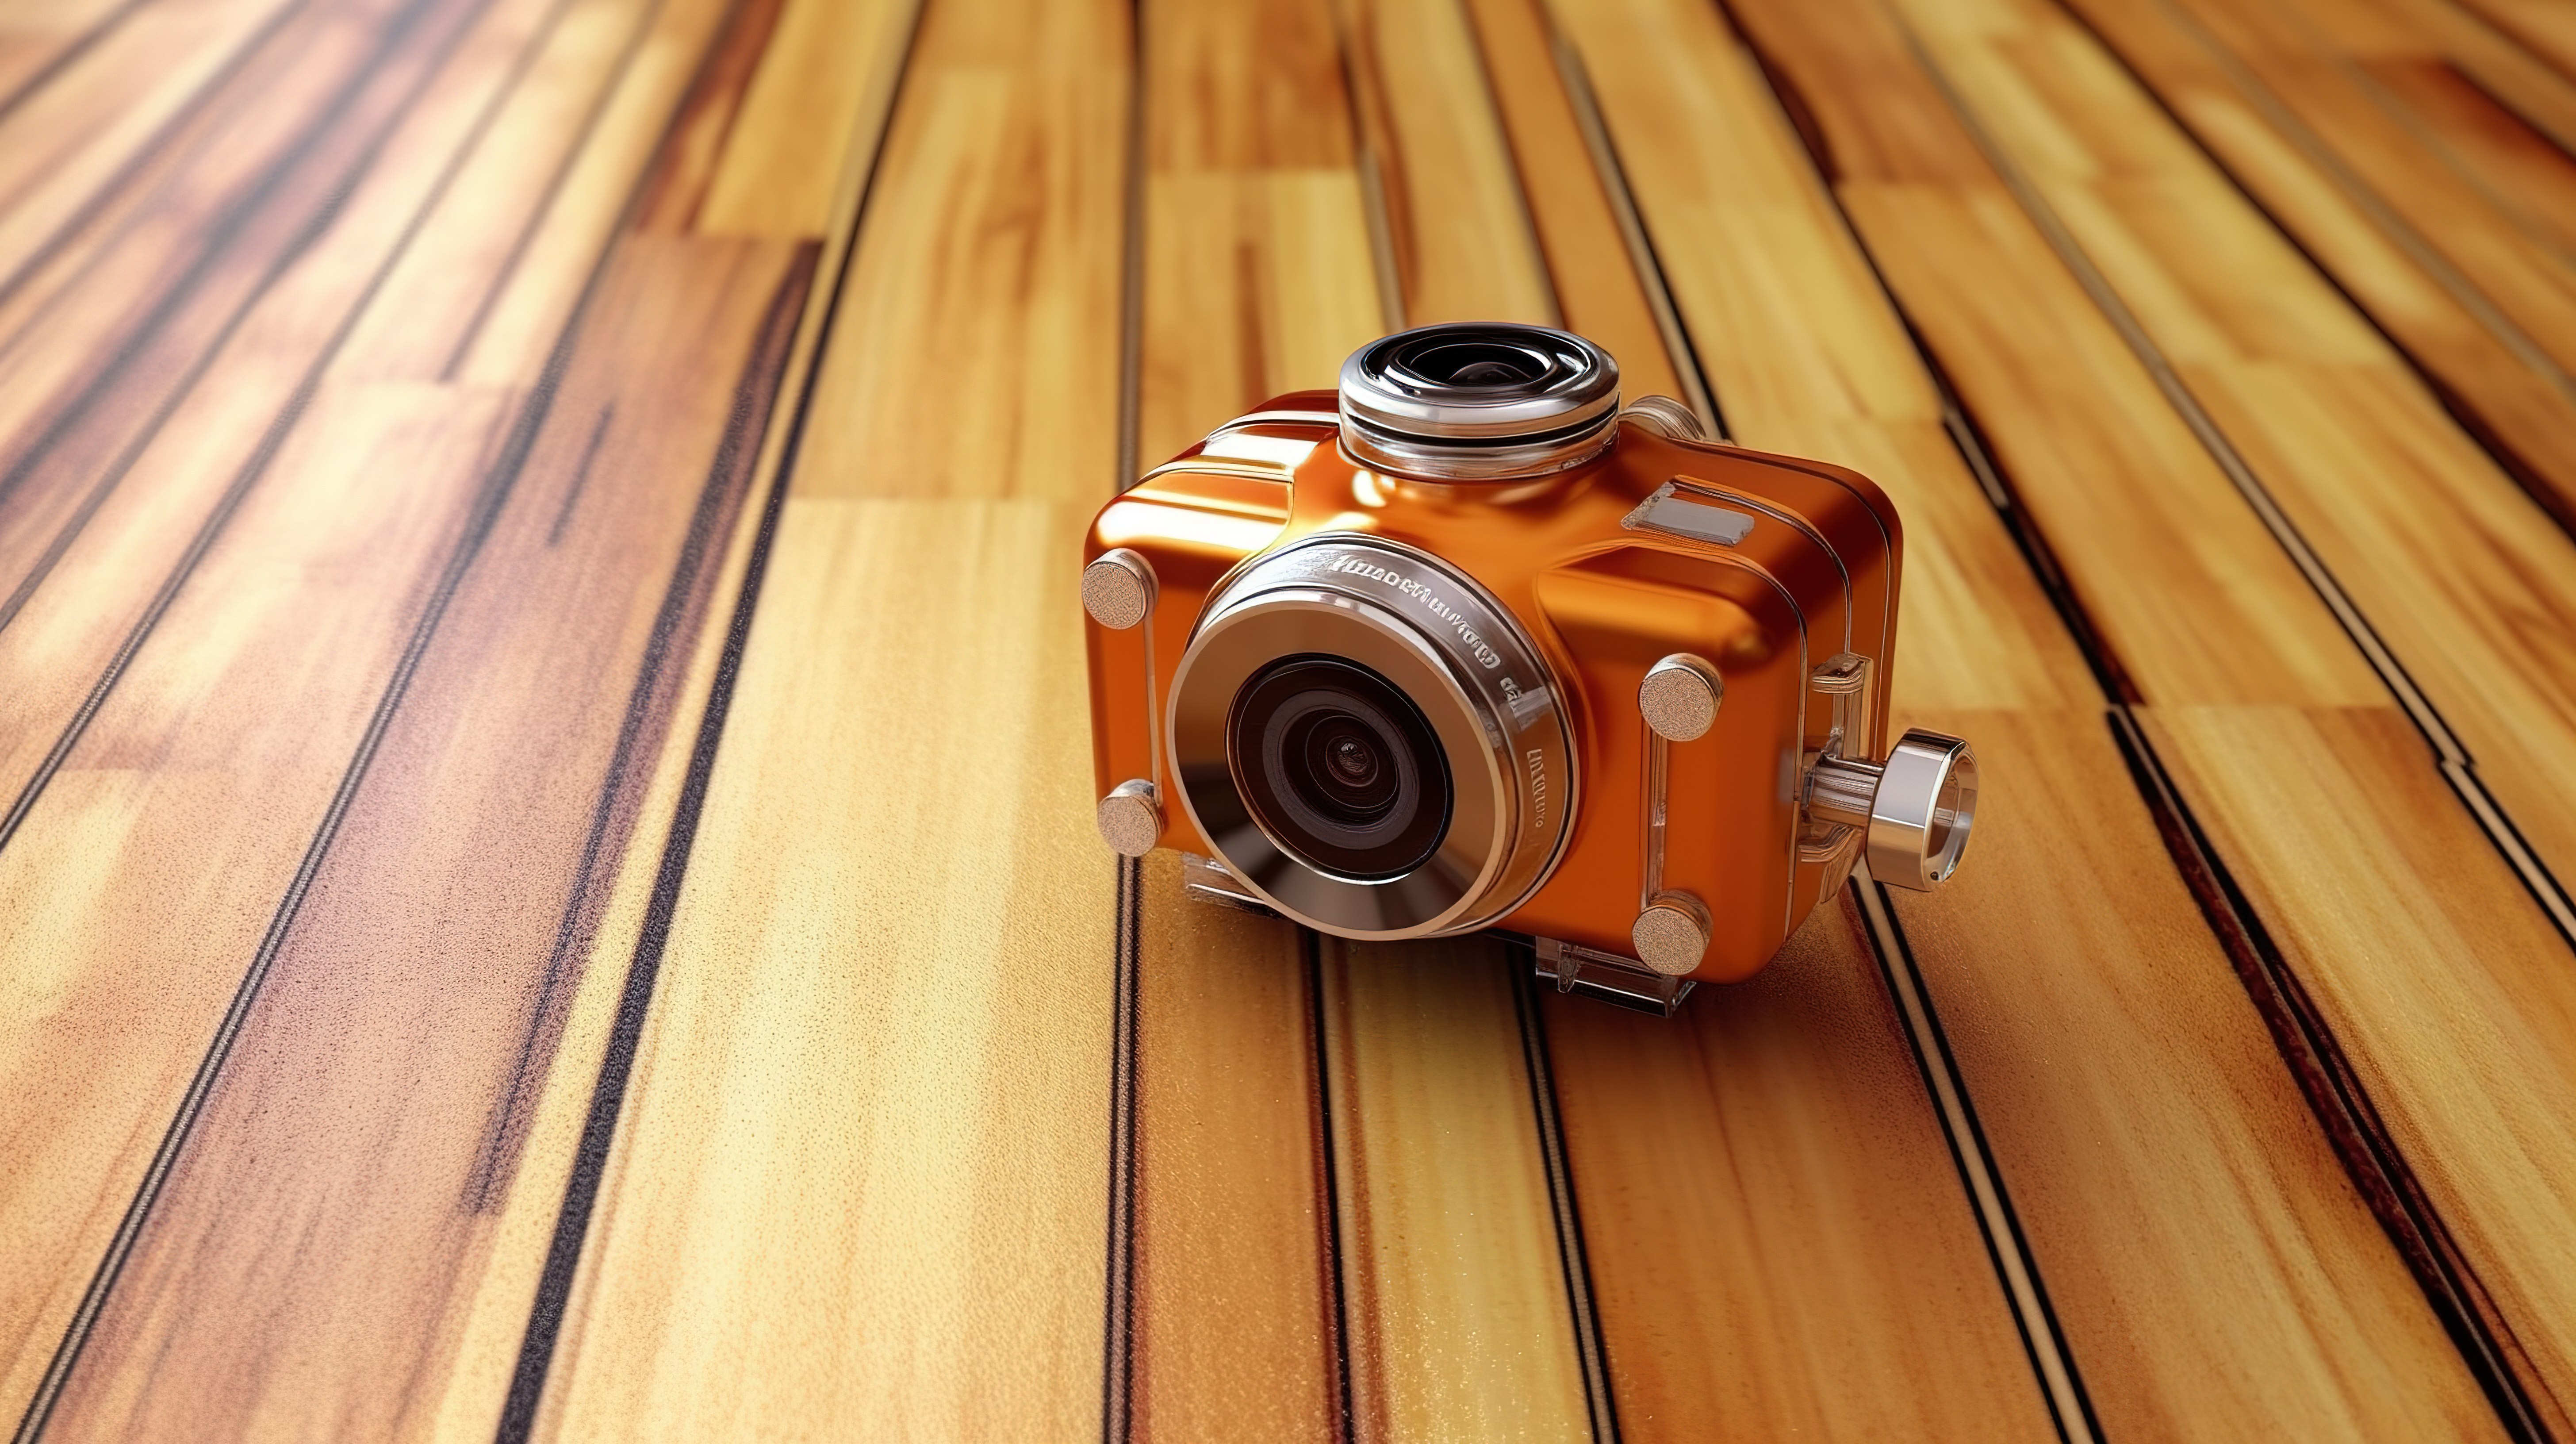 3D 渲染的超高清动作相机放在木桌上图片